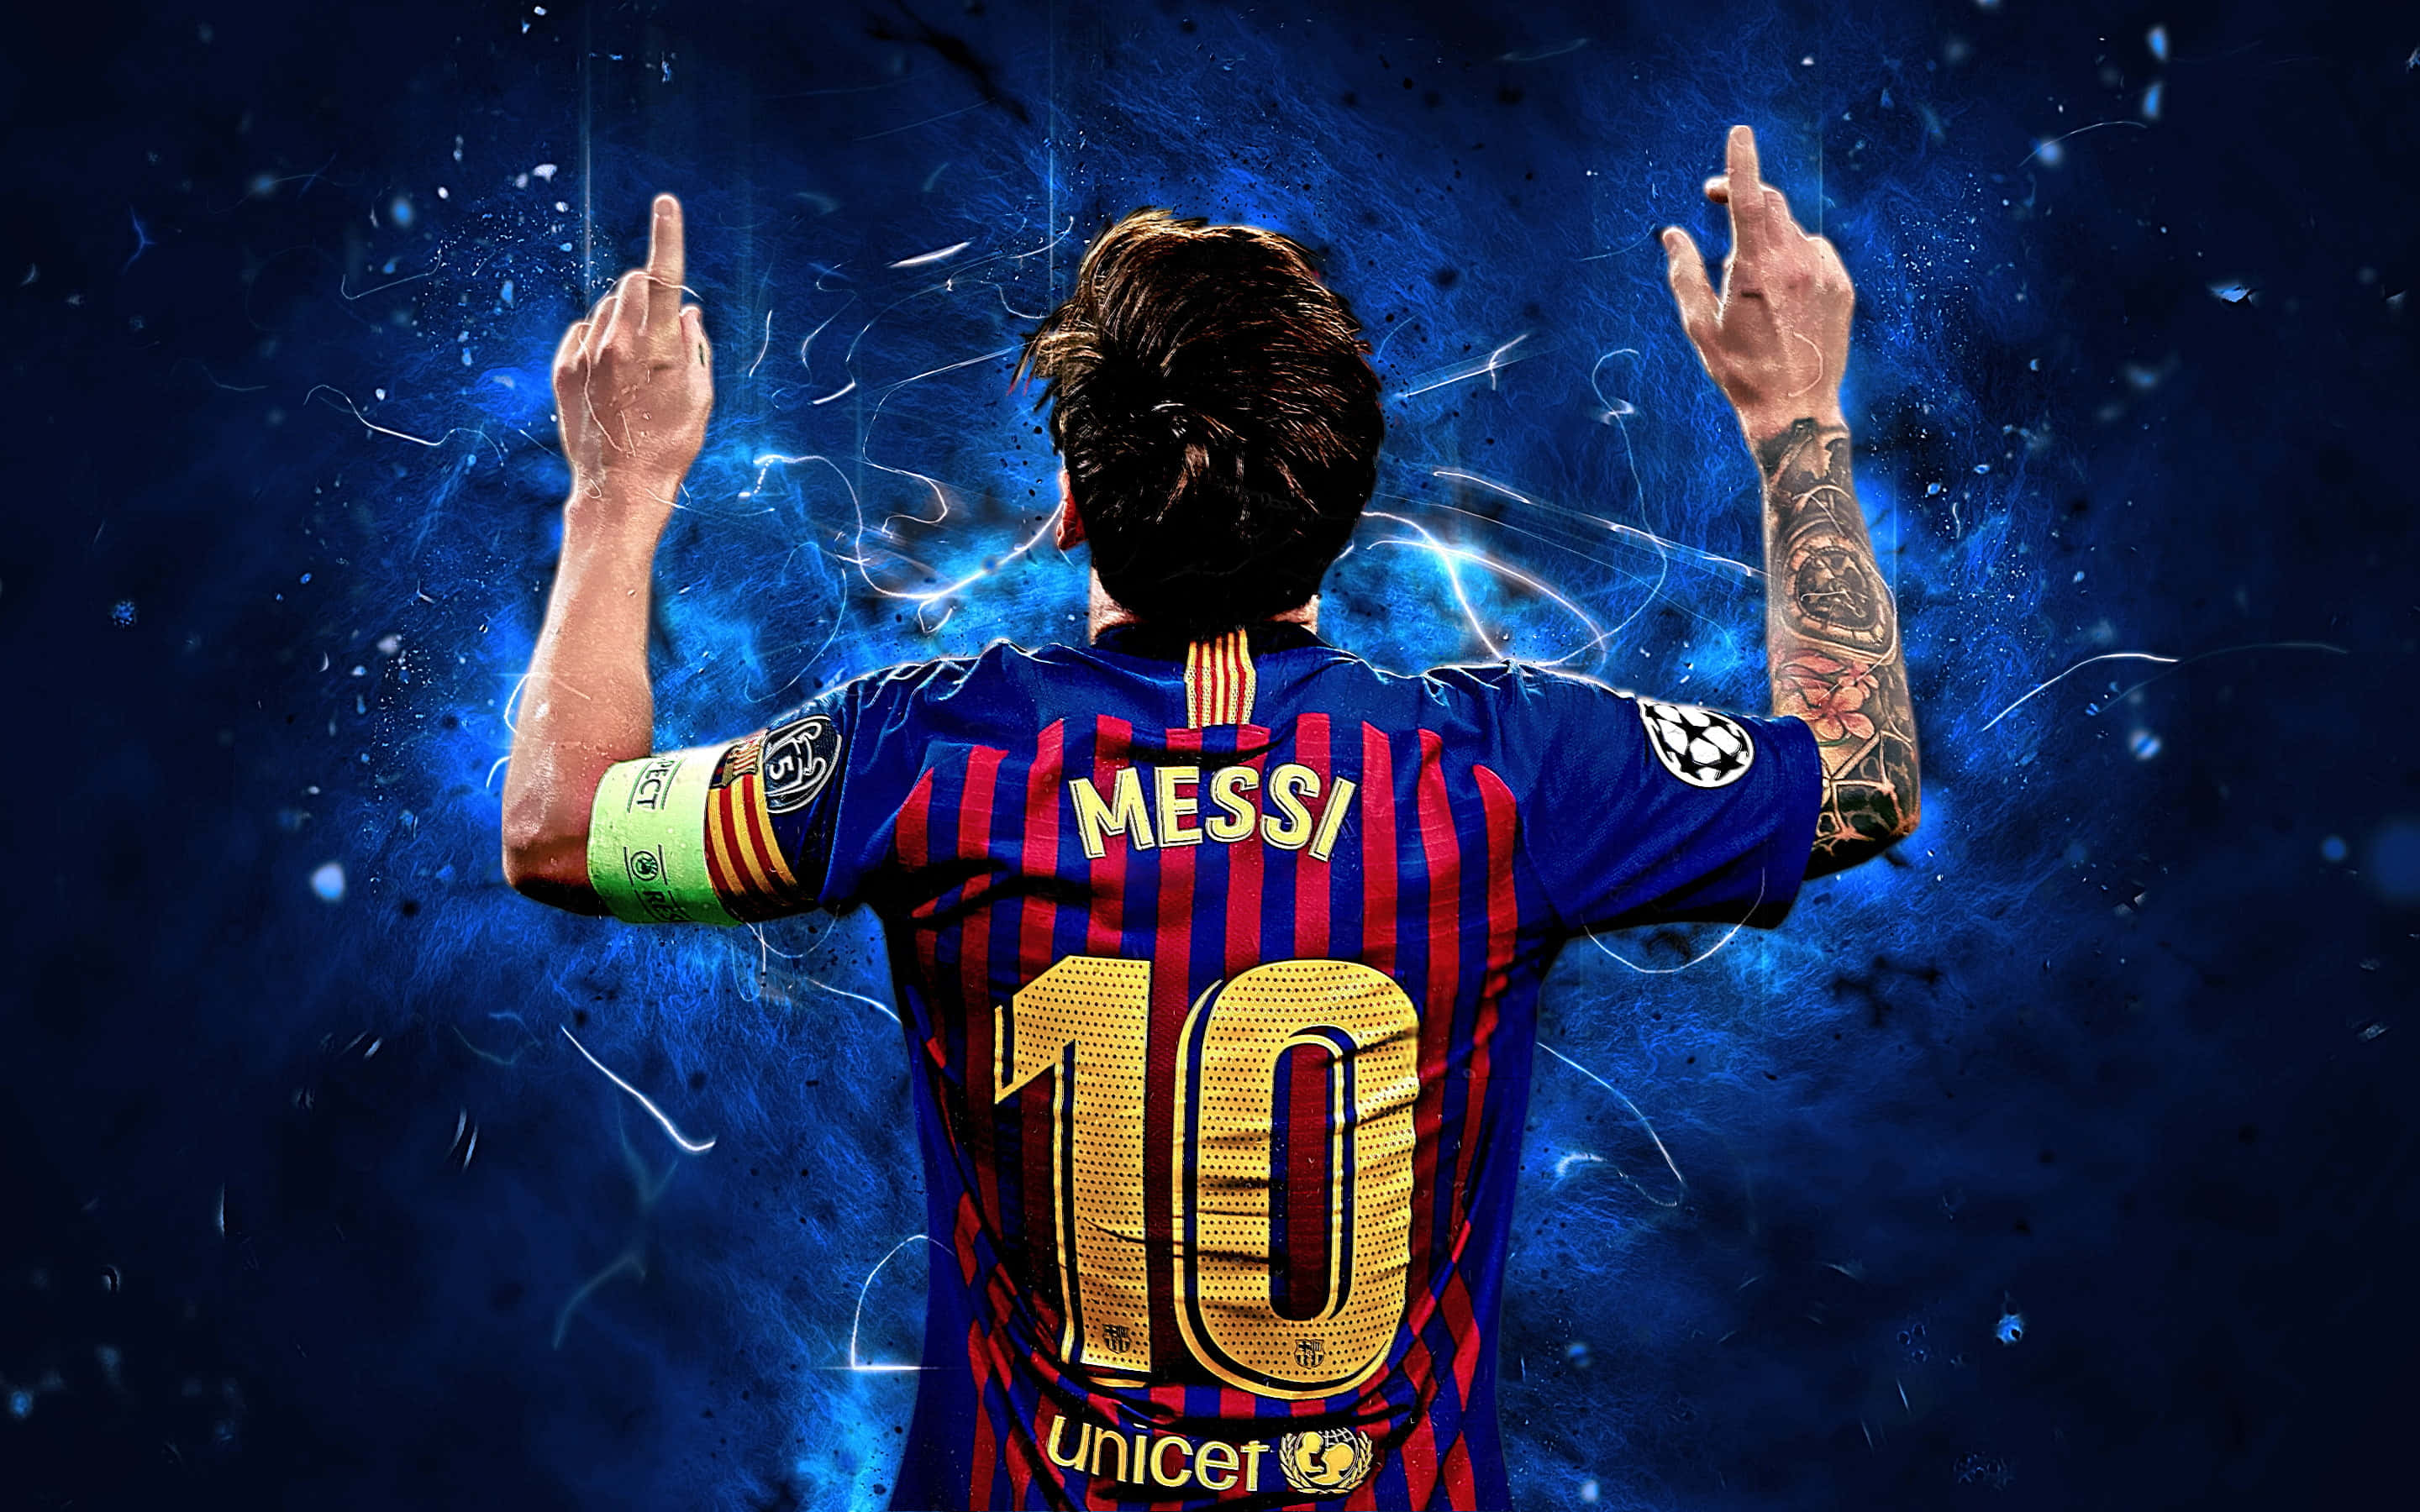 Denstørste Fodboldspiller På Planeten - Lionel Messi